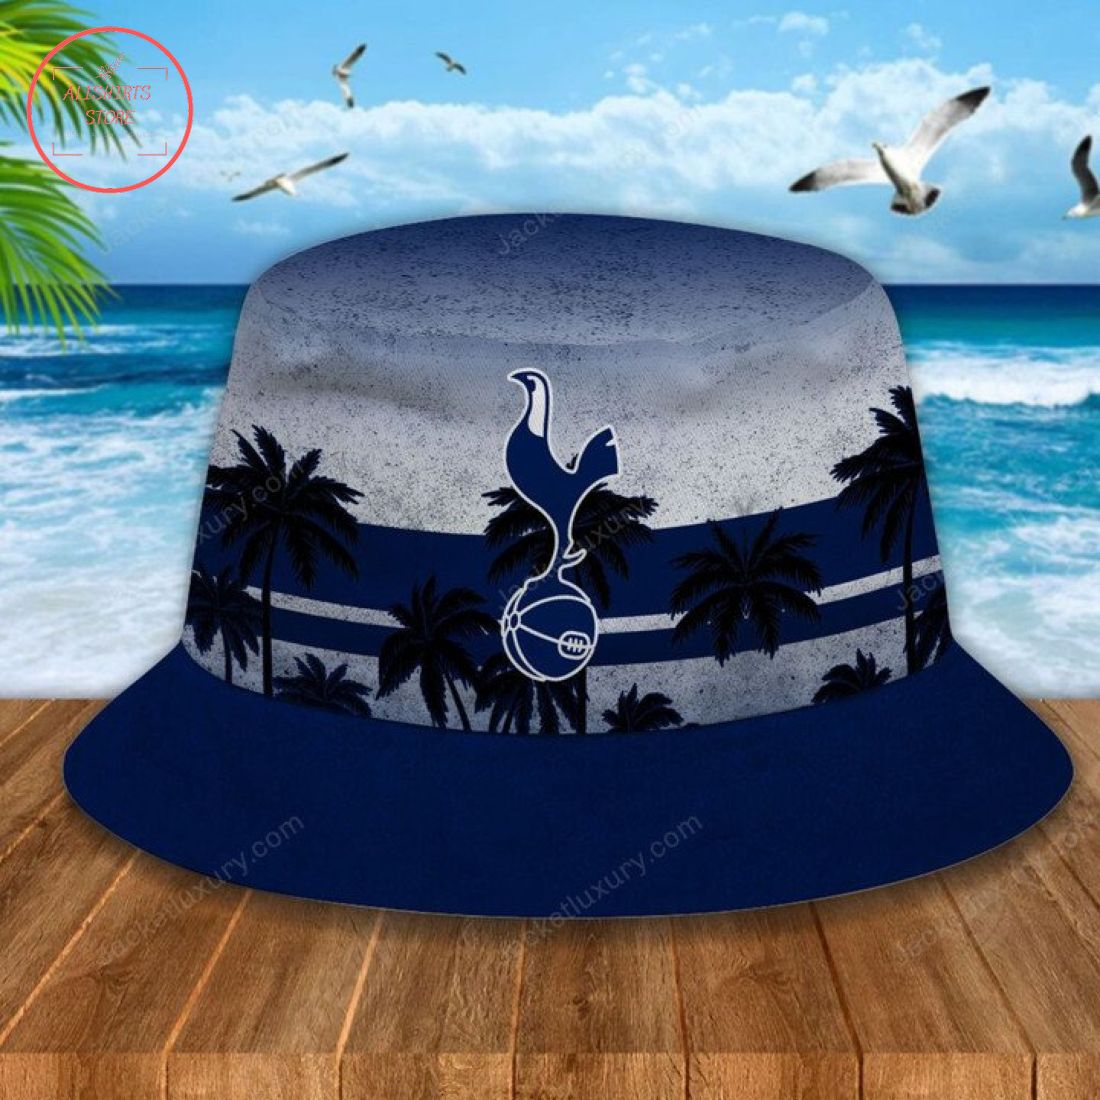 EPL Tottenham Hotspur FC Bucket Hat